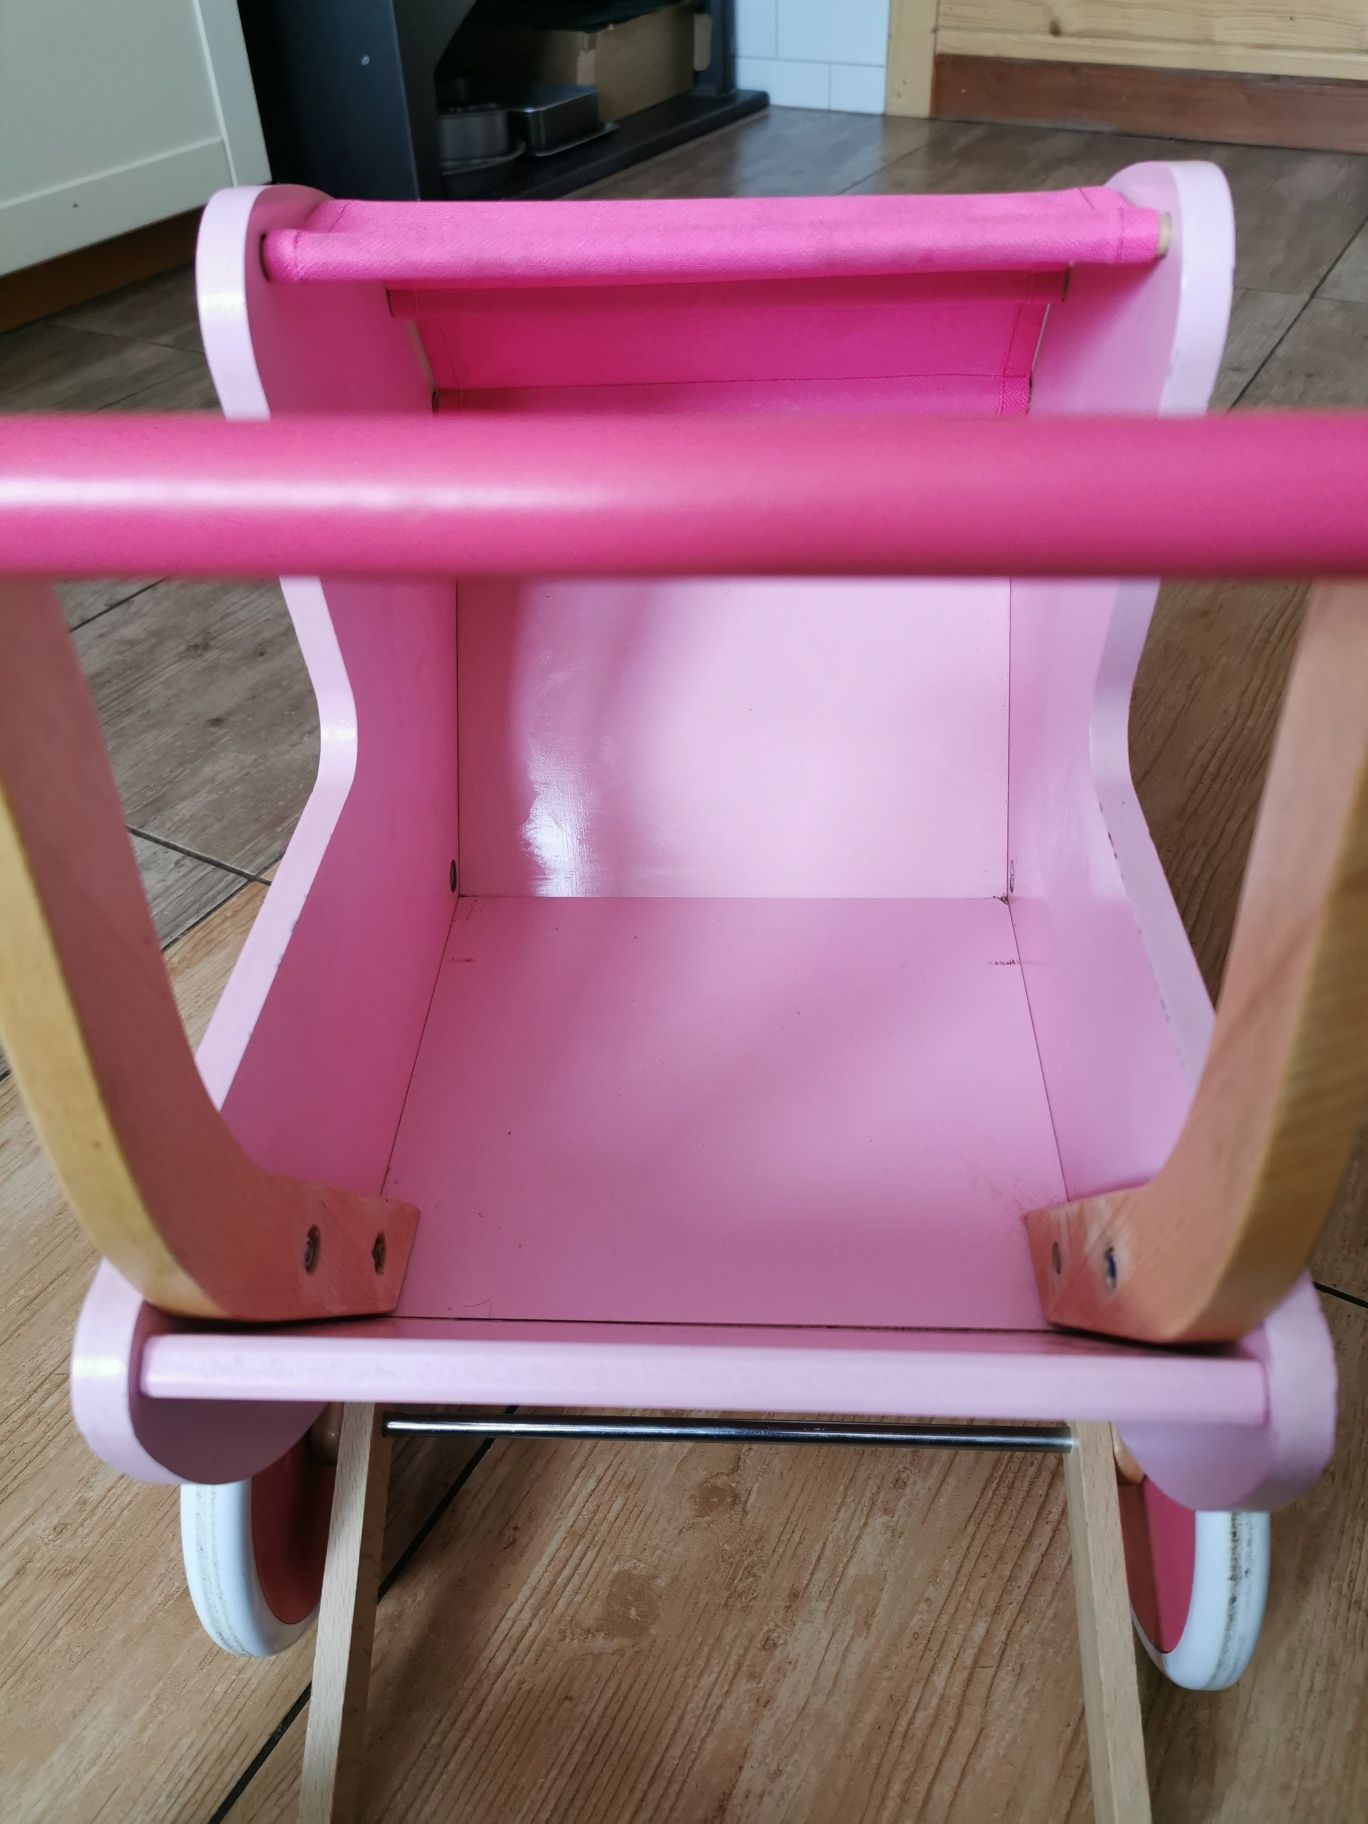 Piękny wózek różowy drewniany dla lalek Mademoiselle Janod wzmocniony